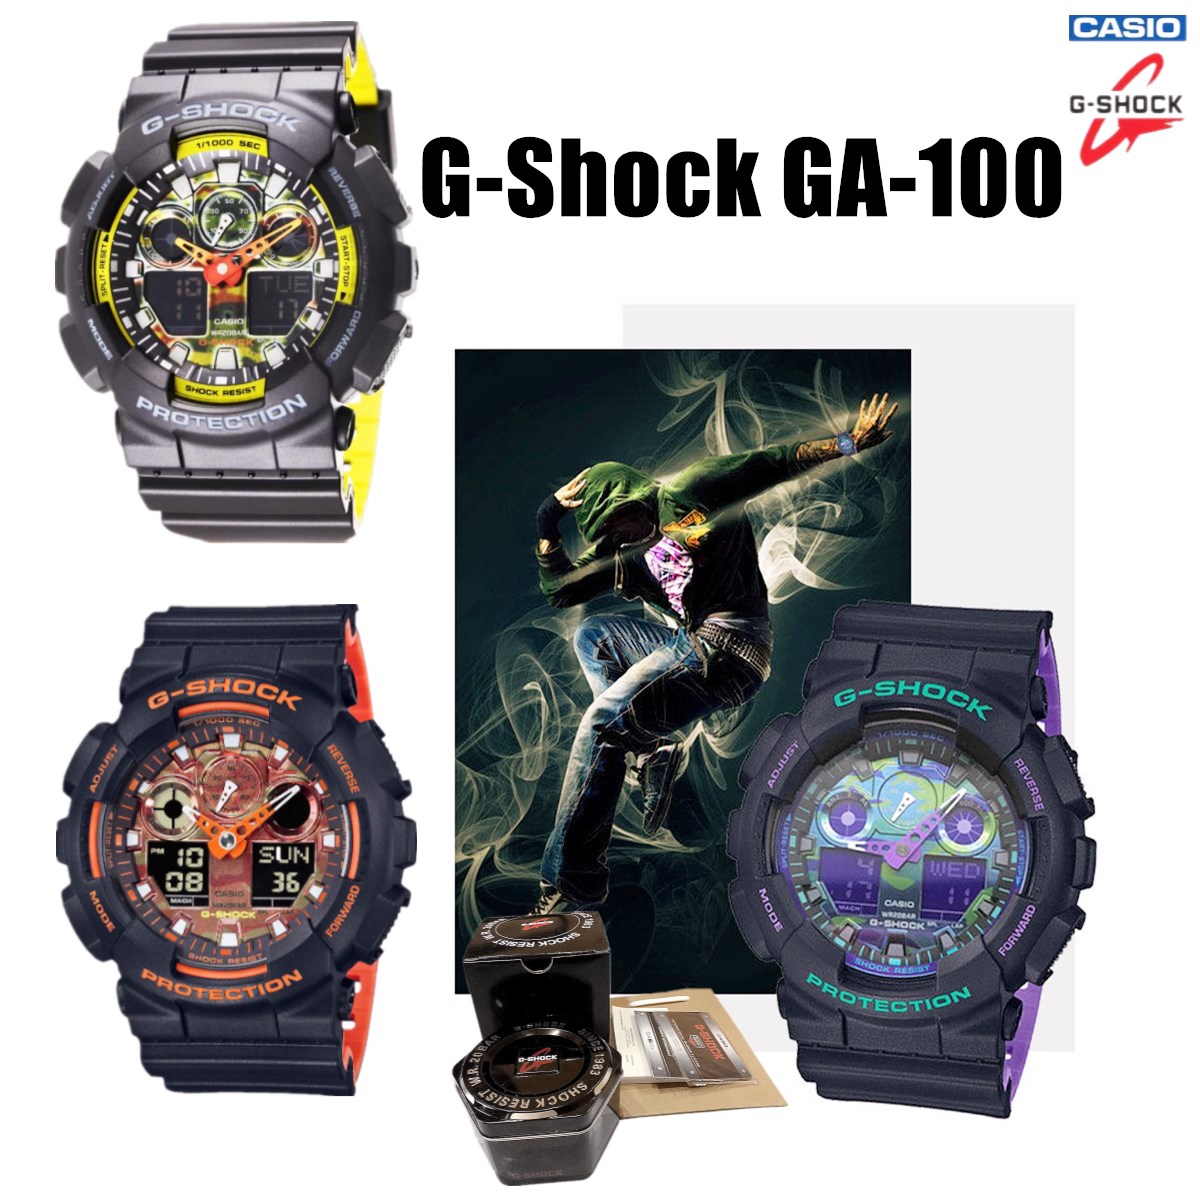 ข้อมูลประกอบของ CASIO G-Shock GA-100 นาฬิกาข้อมือแฟชั่น มีสามสีให้เลือก ใส่ได้ทั้งชายและหญิง หน้าปัด40มม.